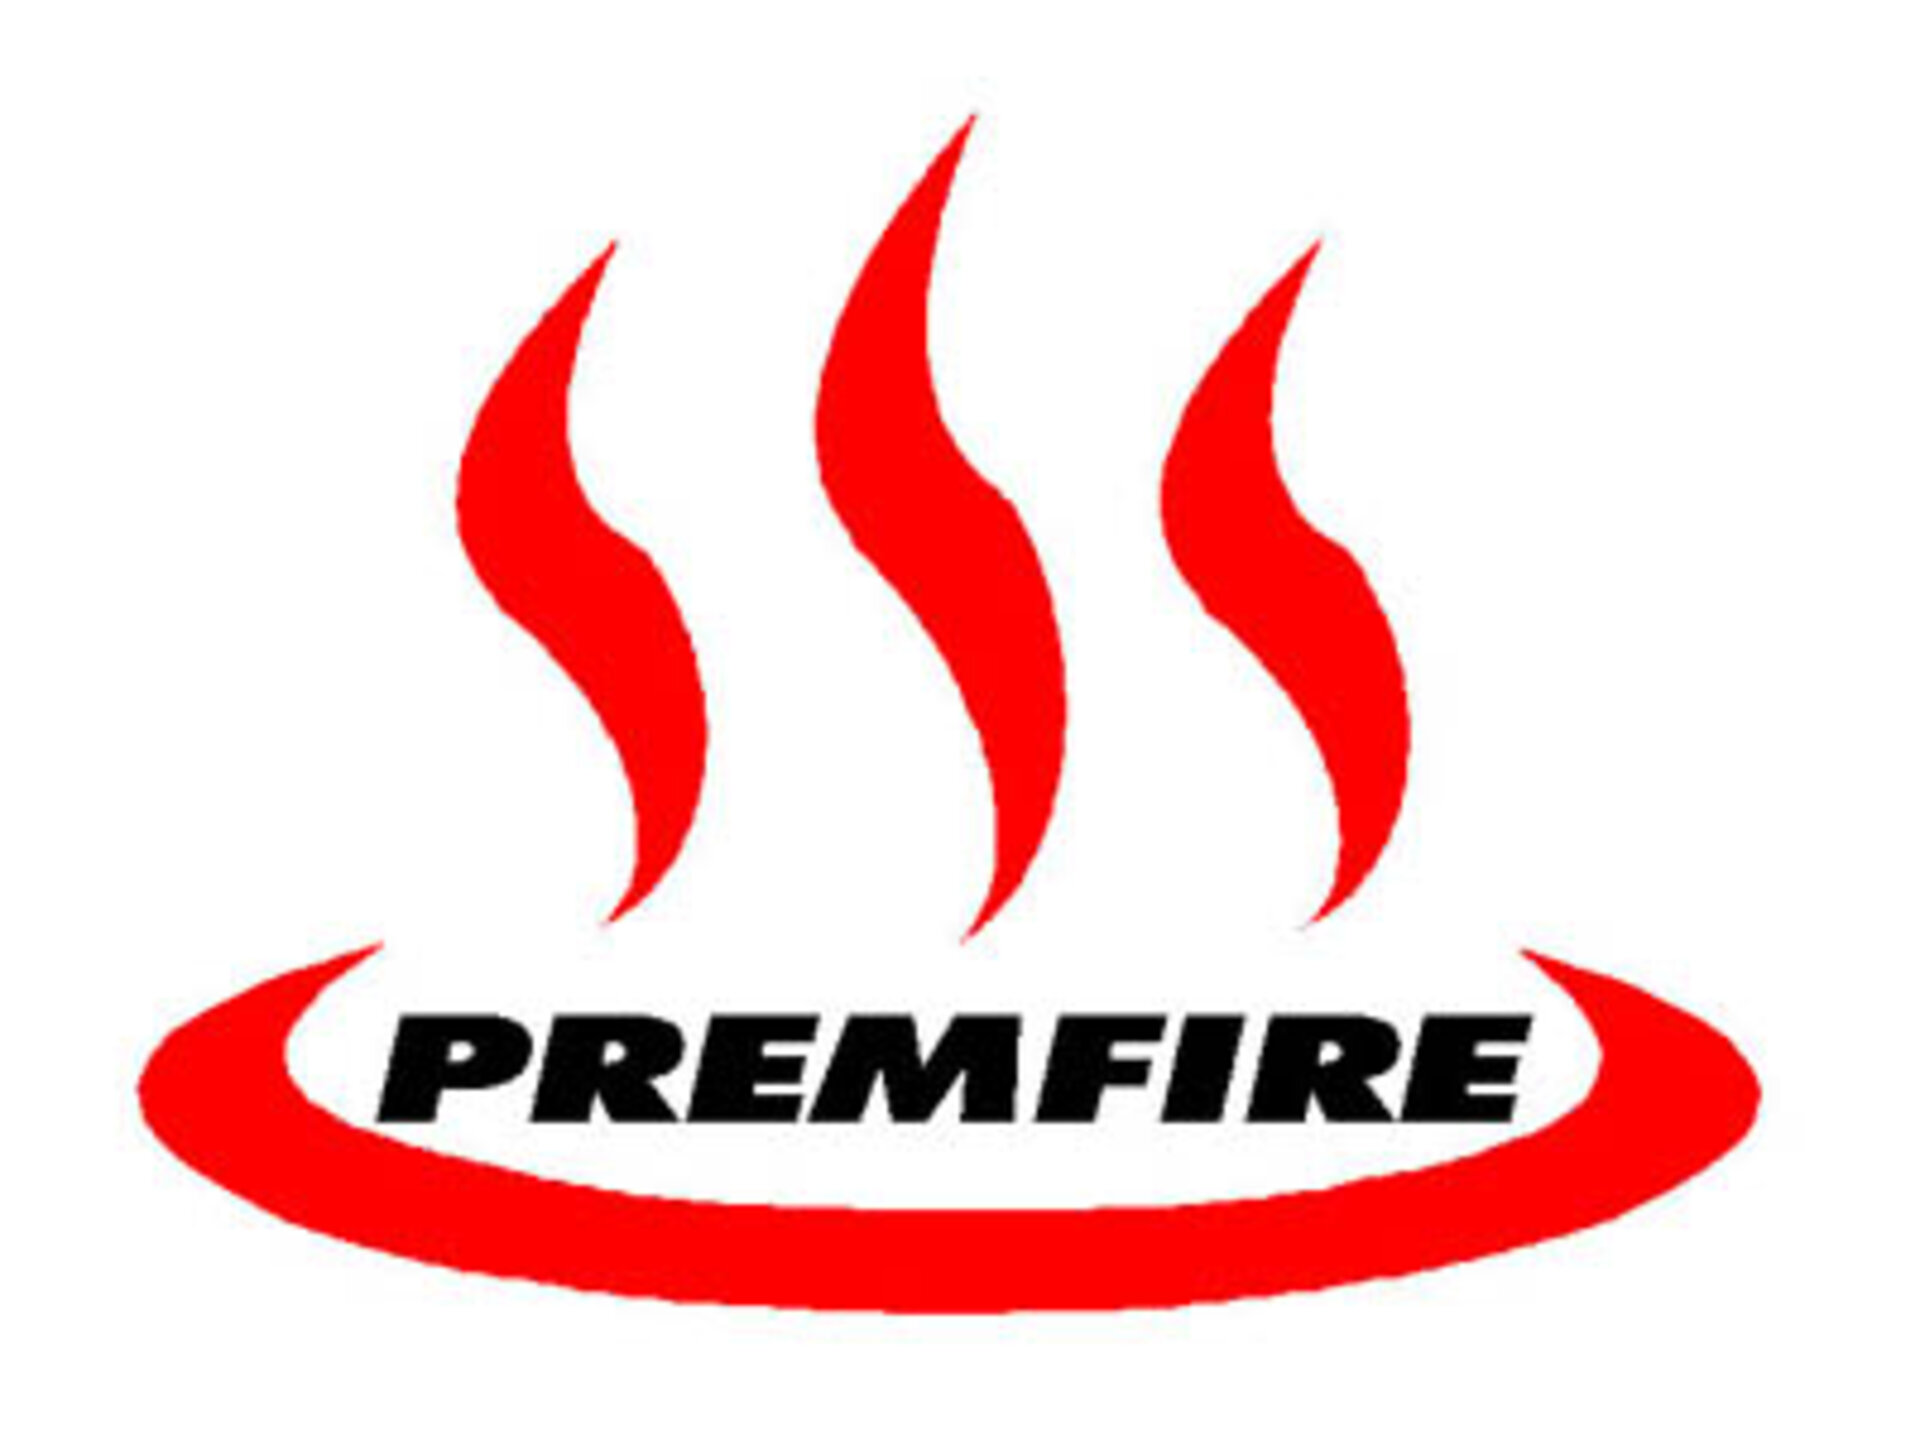 Premfire